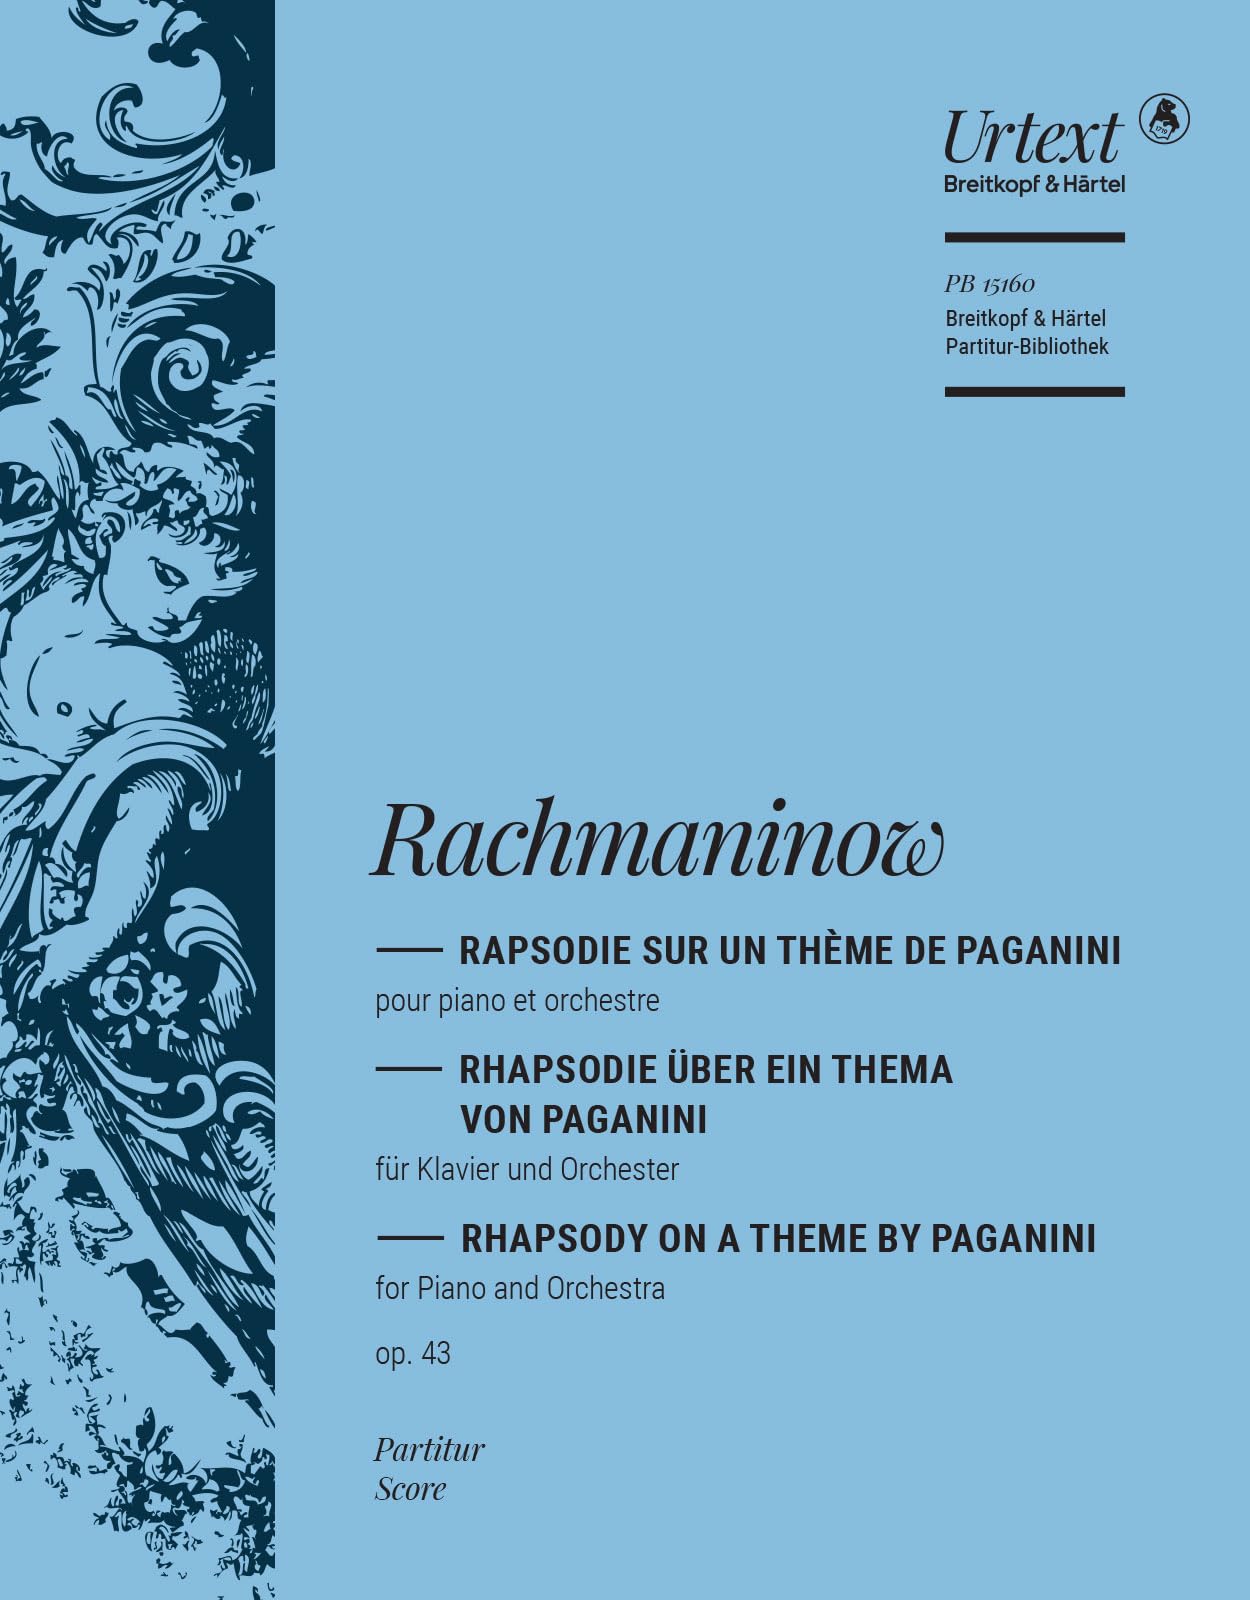 Rapsodie sur un thème de Paganini op. 43 - Partitur - Breitkopf Urtext (PB 15160)